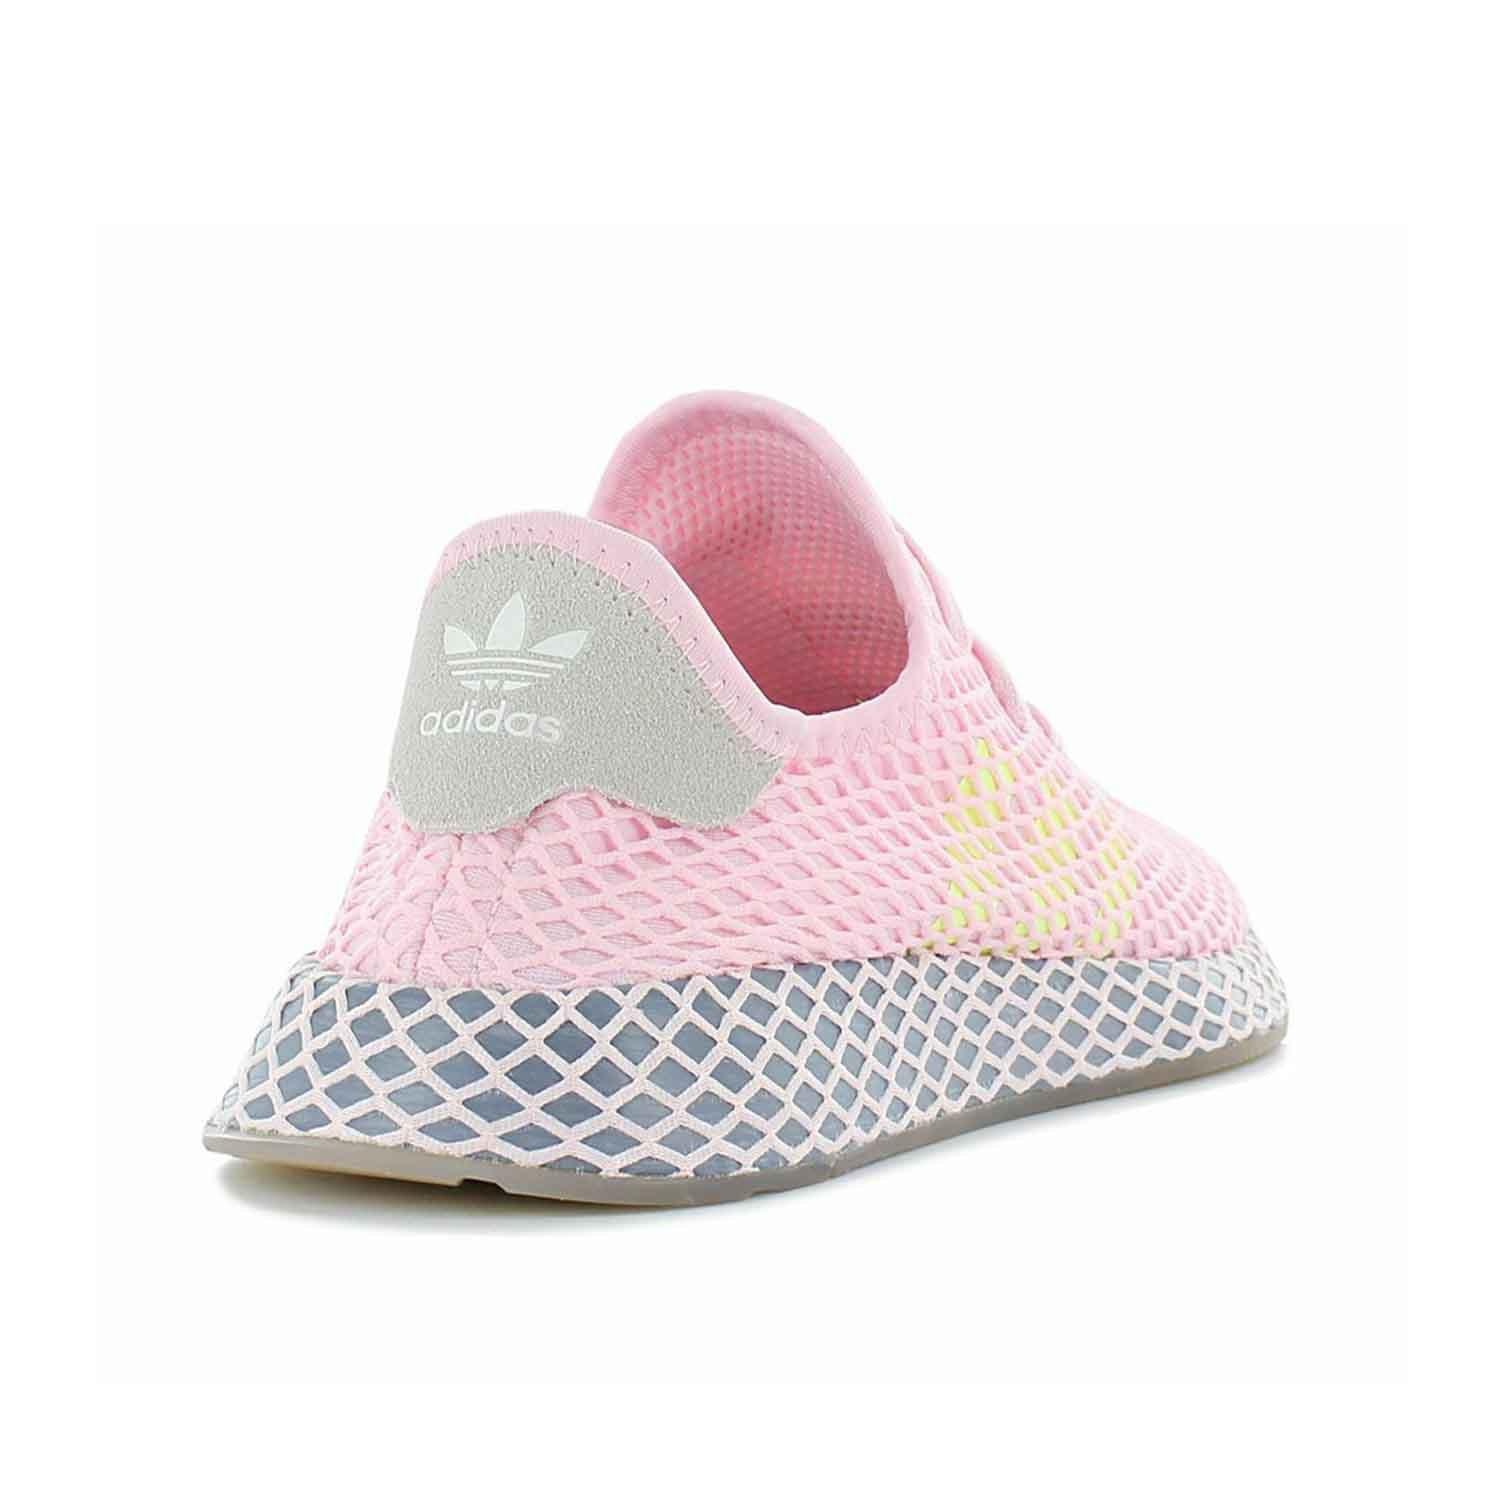 adidas deerupt baby pink